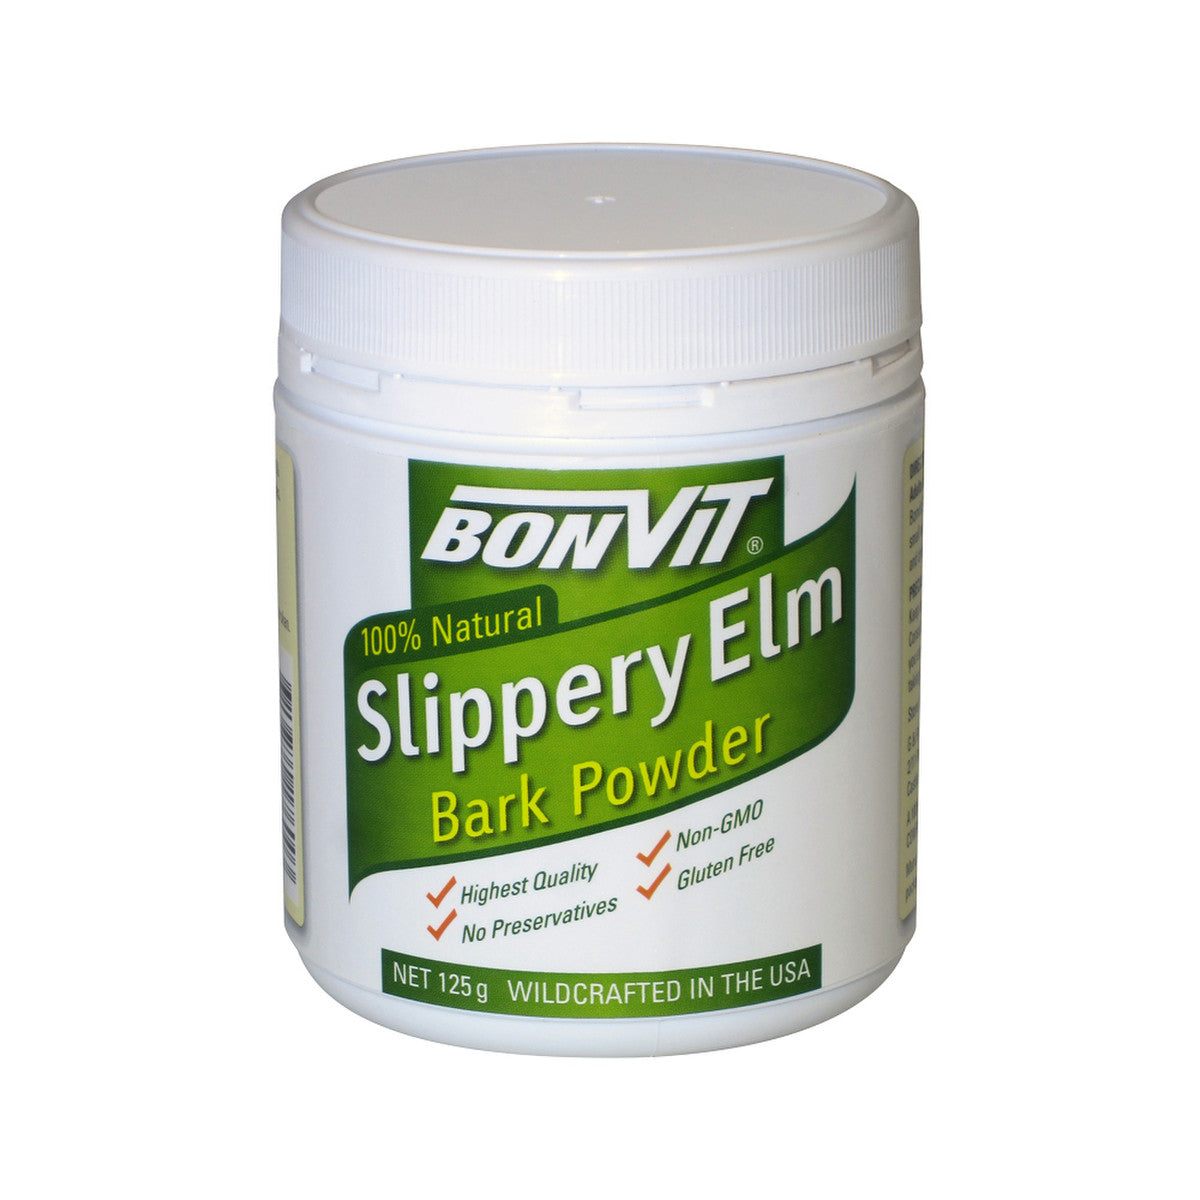 Bonvit - Slippery Elm Bark Powder